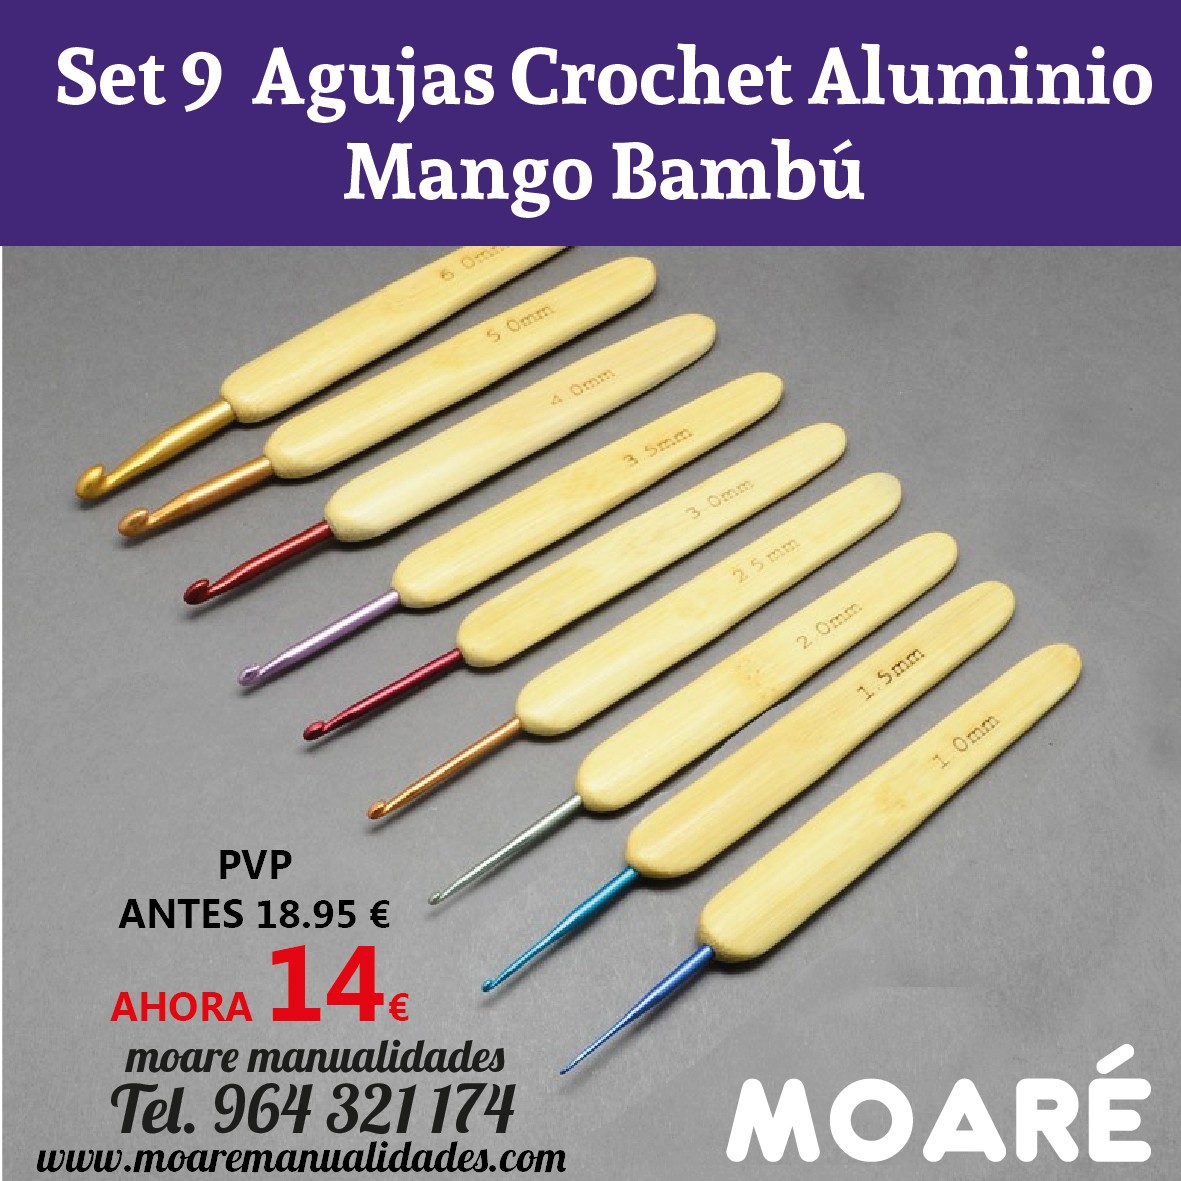 Set de 10 agujas crochet Aluminio con mango de bambú